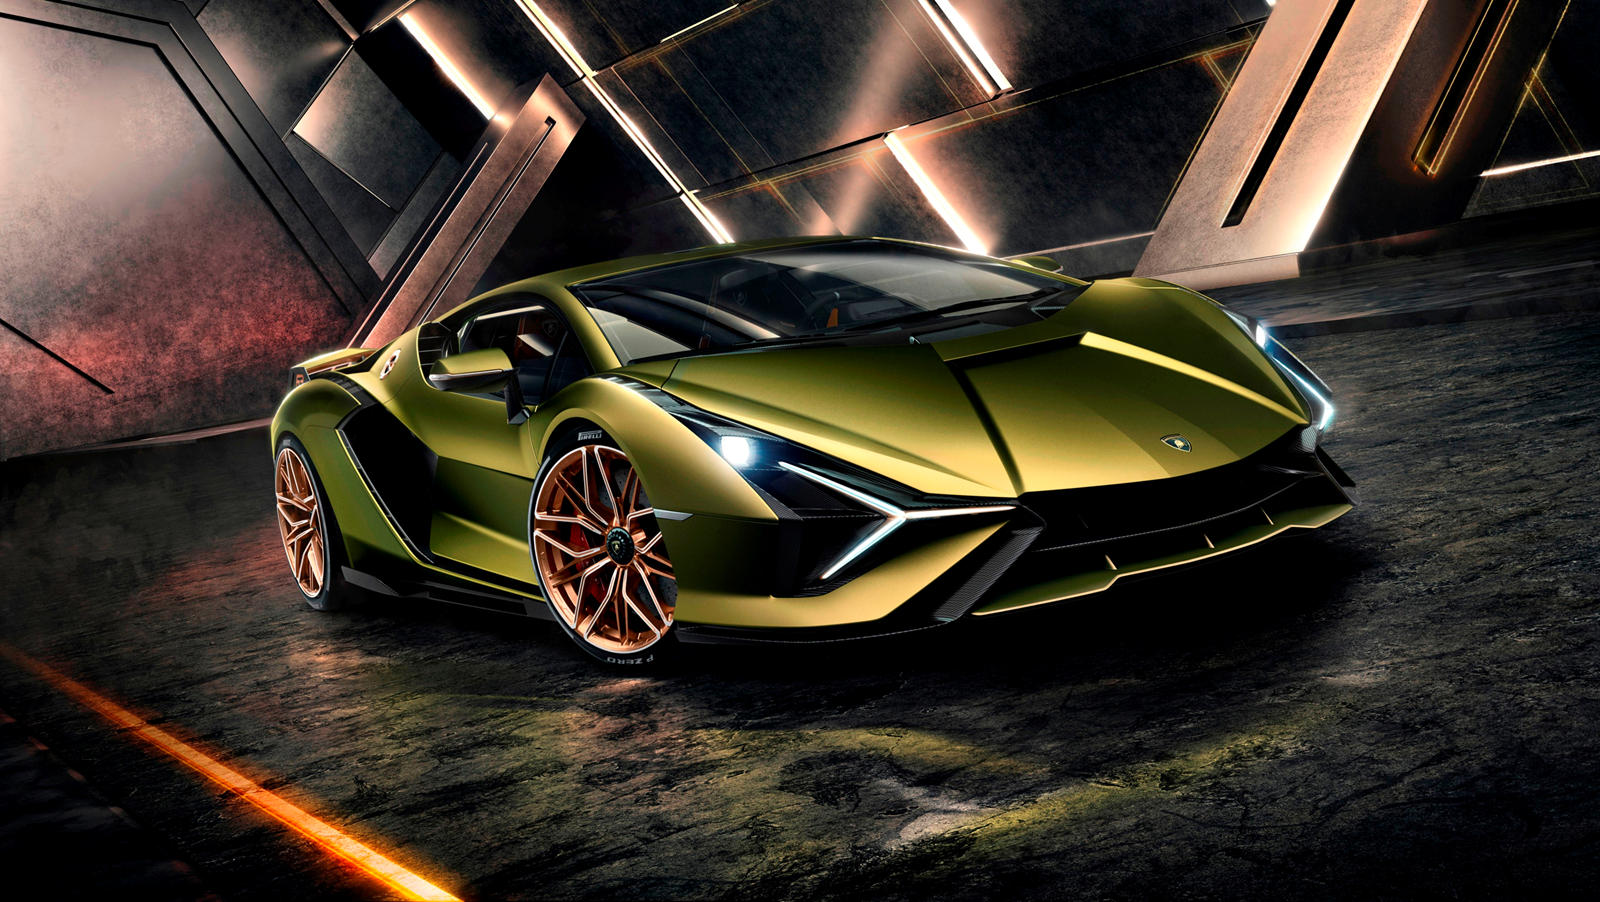 Несколько дней назад мы сообщили, что Lamborghini планировал что-то захватывающее на этой неделе. Итальянский автопроизводитель давал нам не слишком много информации, за исключением одного неясного тизер изображения, которым он поделился в социальных